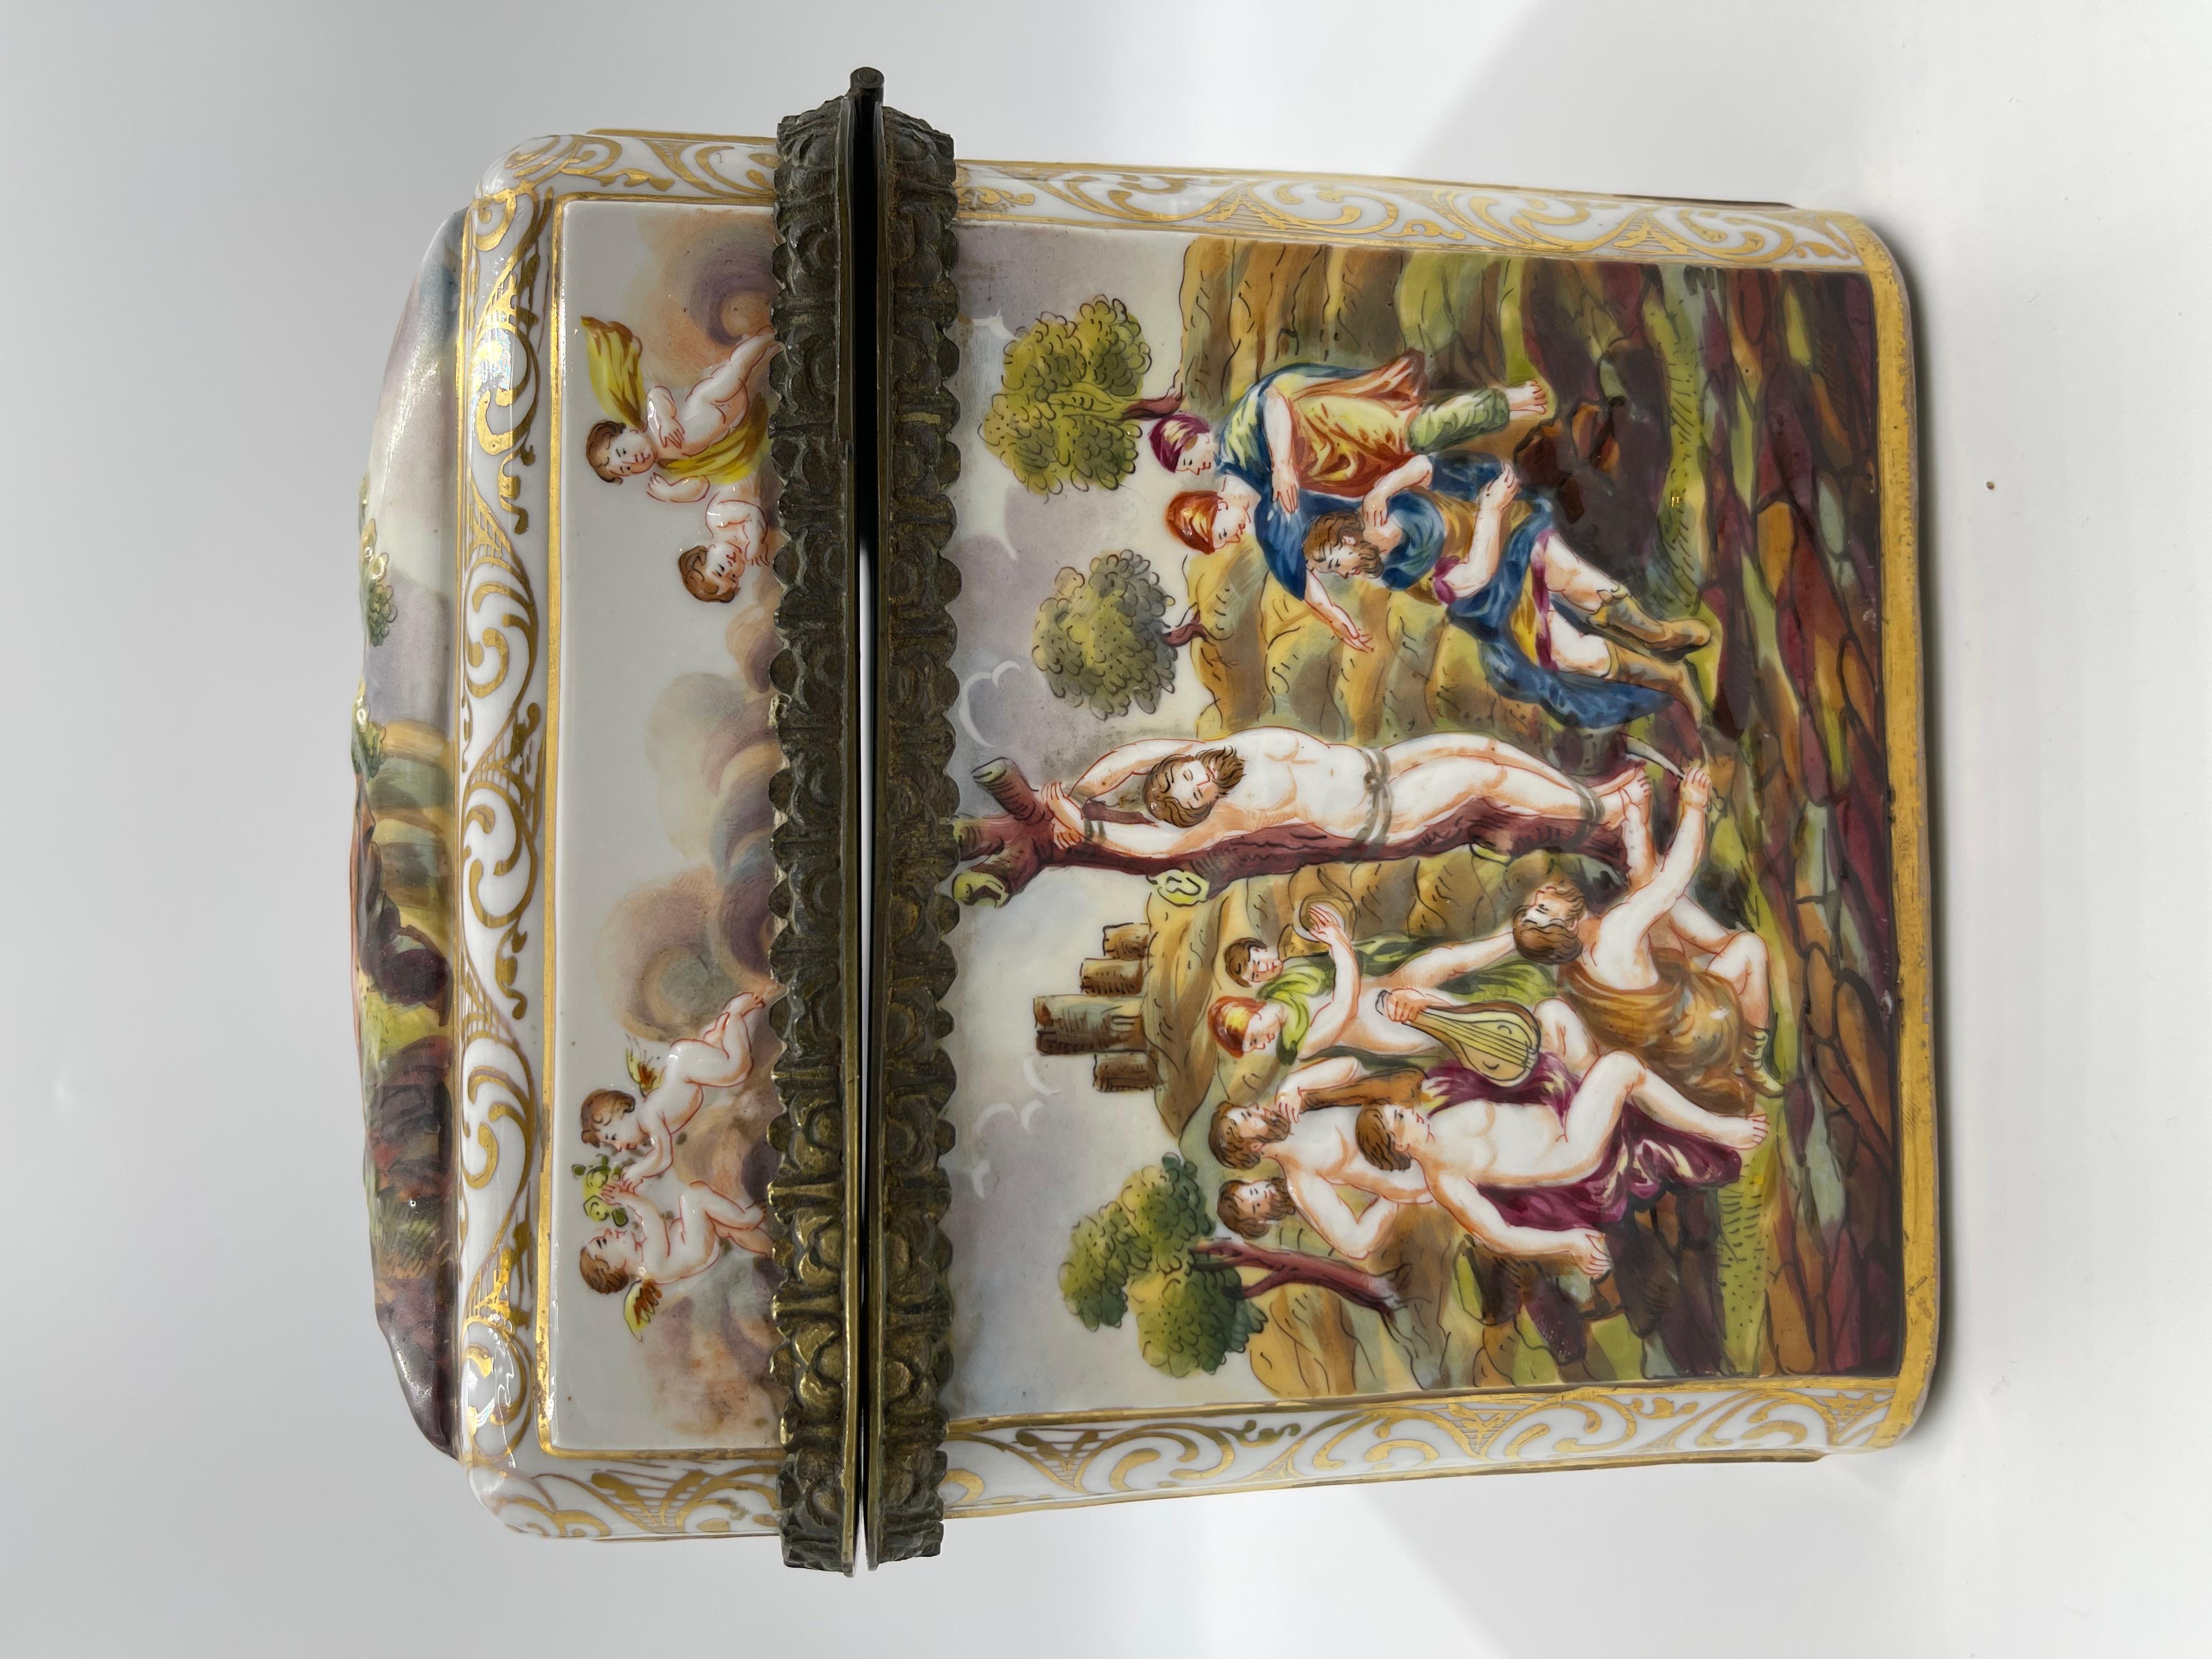 Rare Large 19th C. Capodimonte Porcelain Box / Table Casket For Sale 4